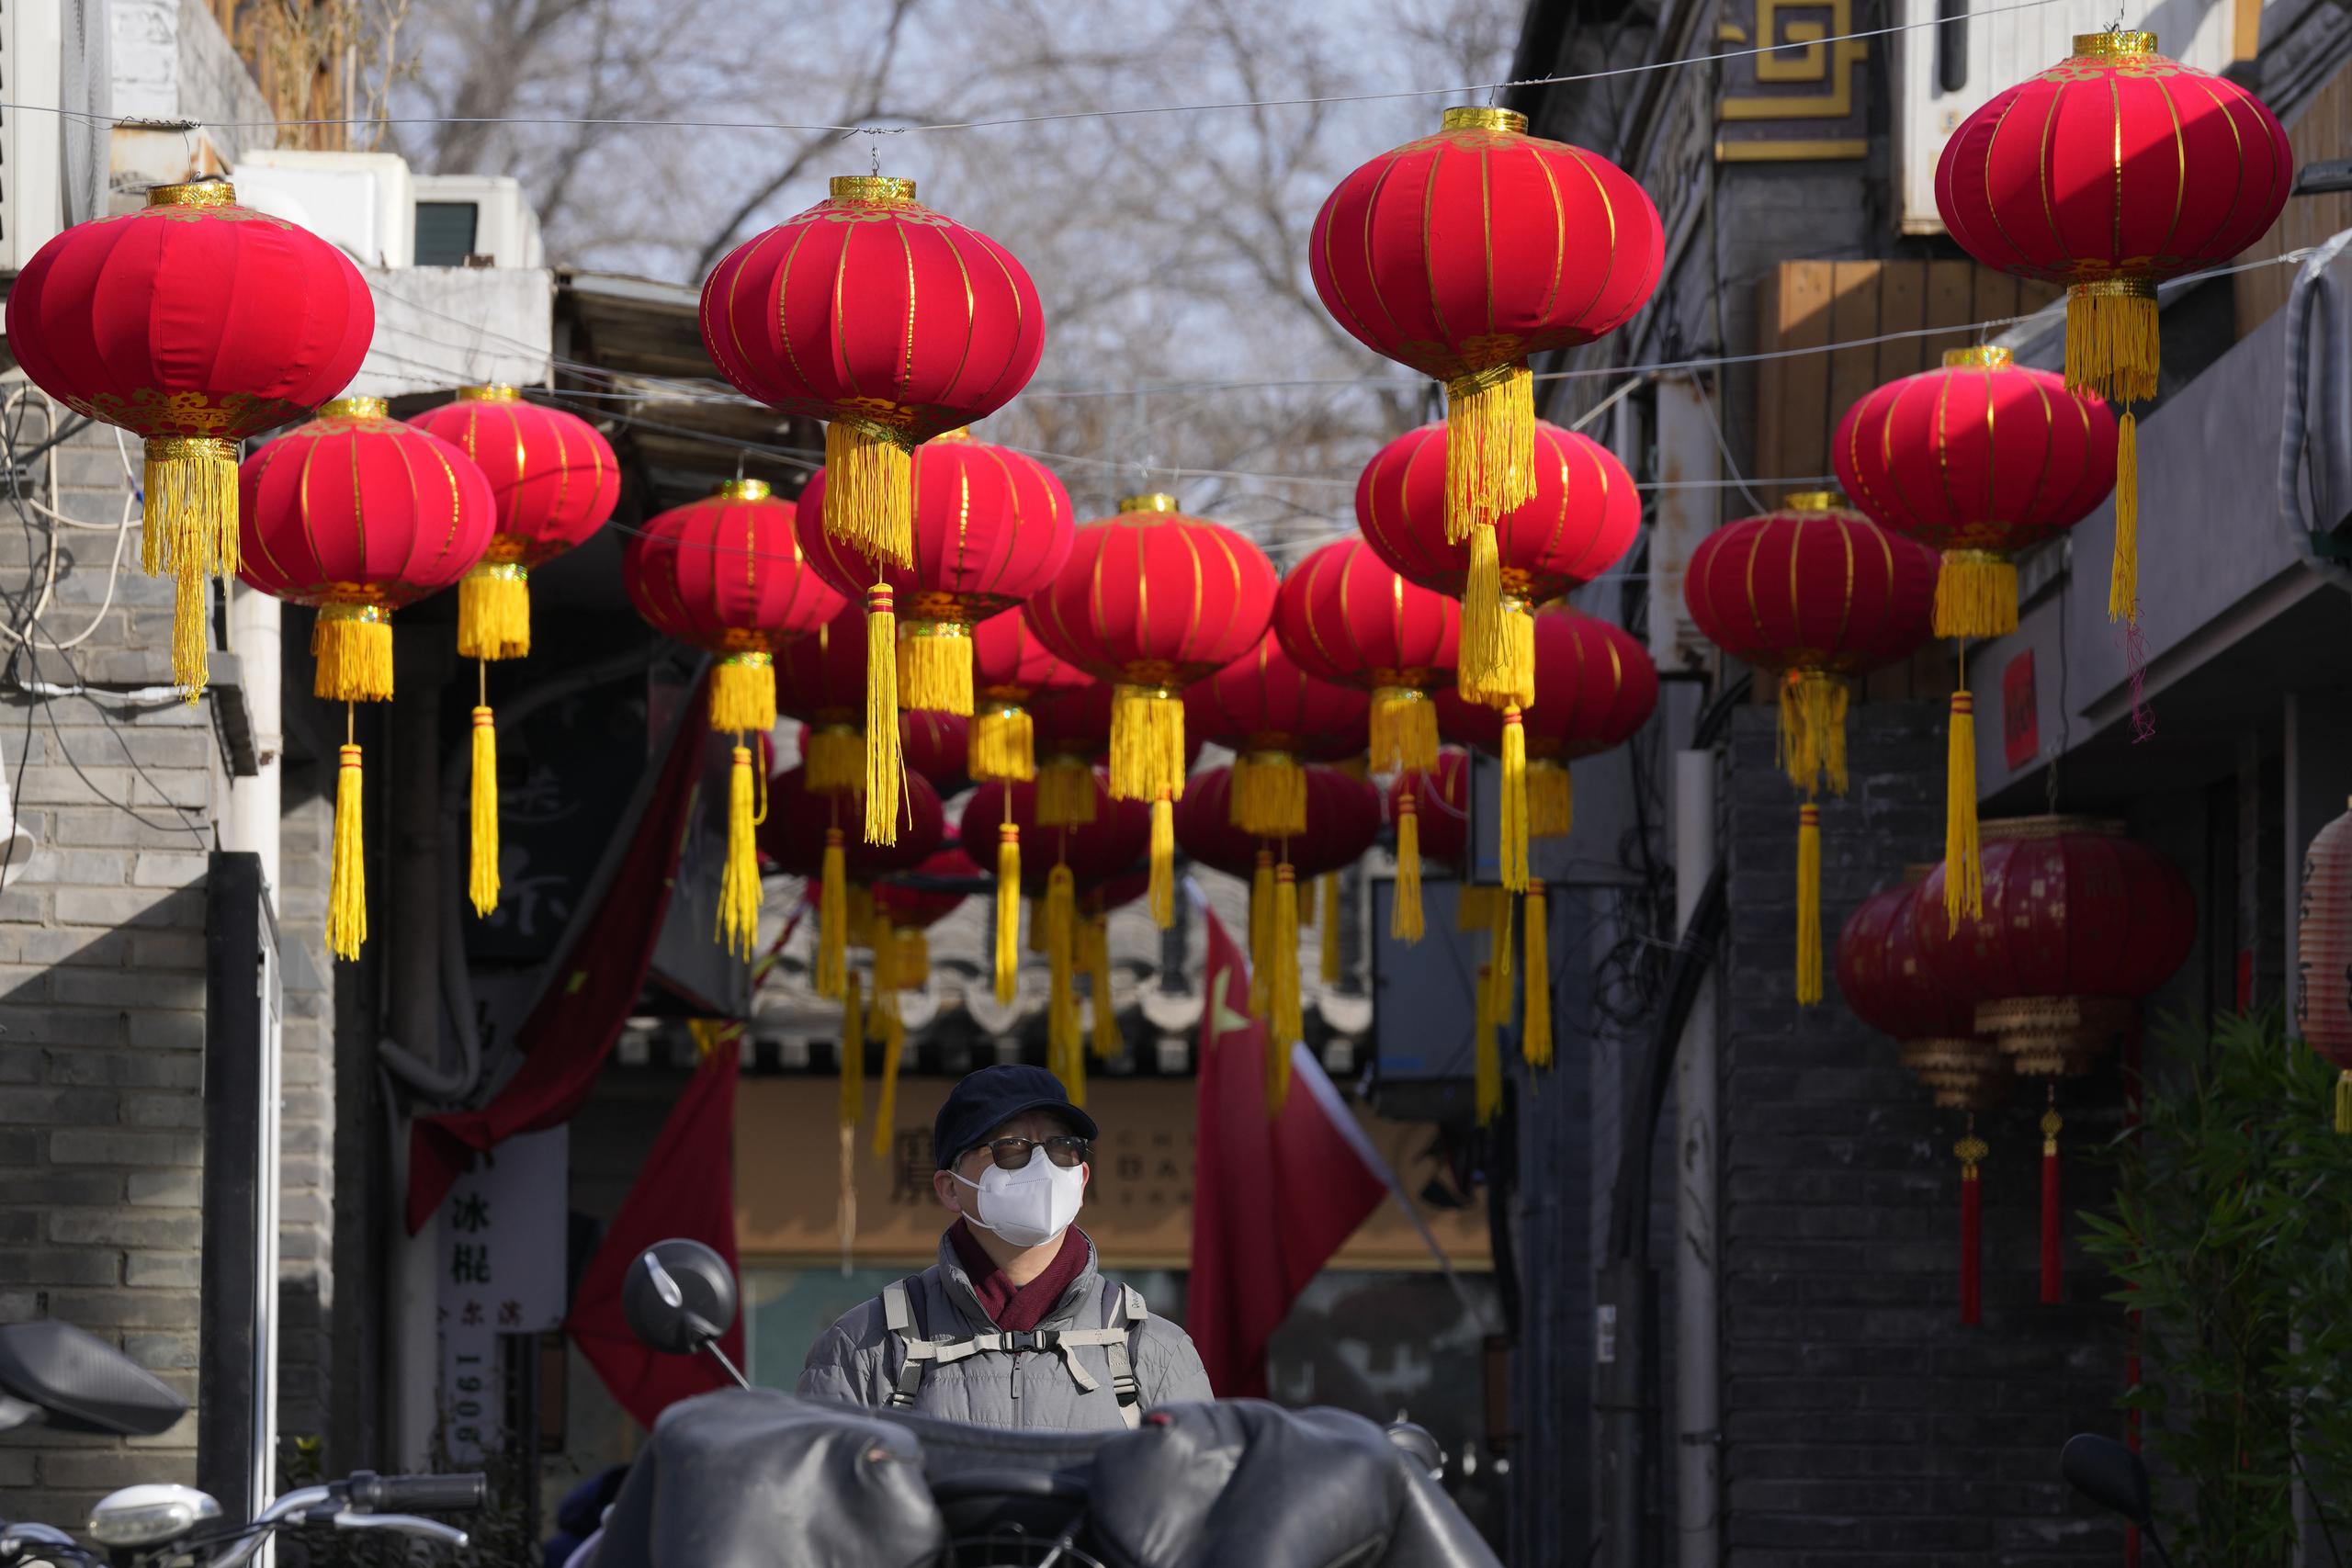 Una persona con mascarilla camina bajo faroles rojos colocados por el Año Nuevo Lunar en Beijing, China.